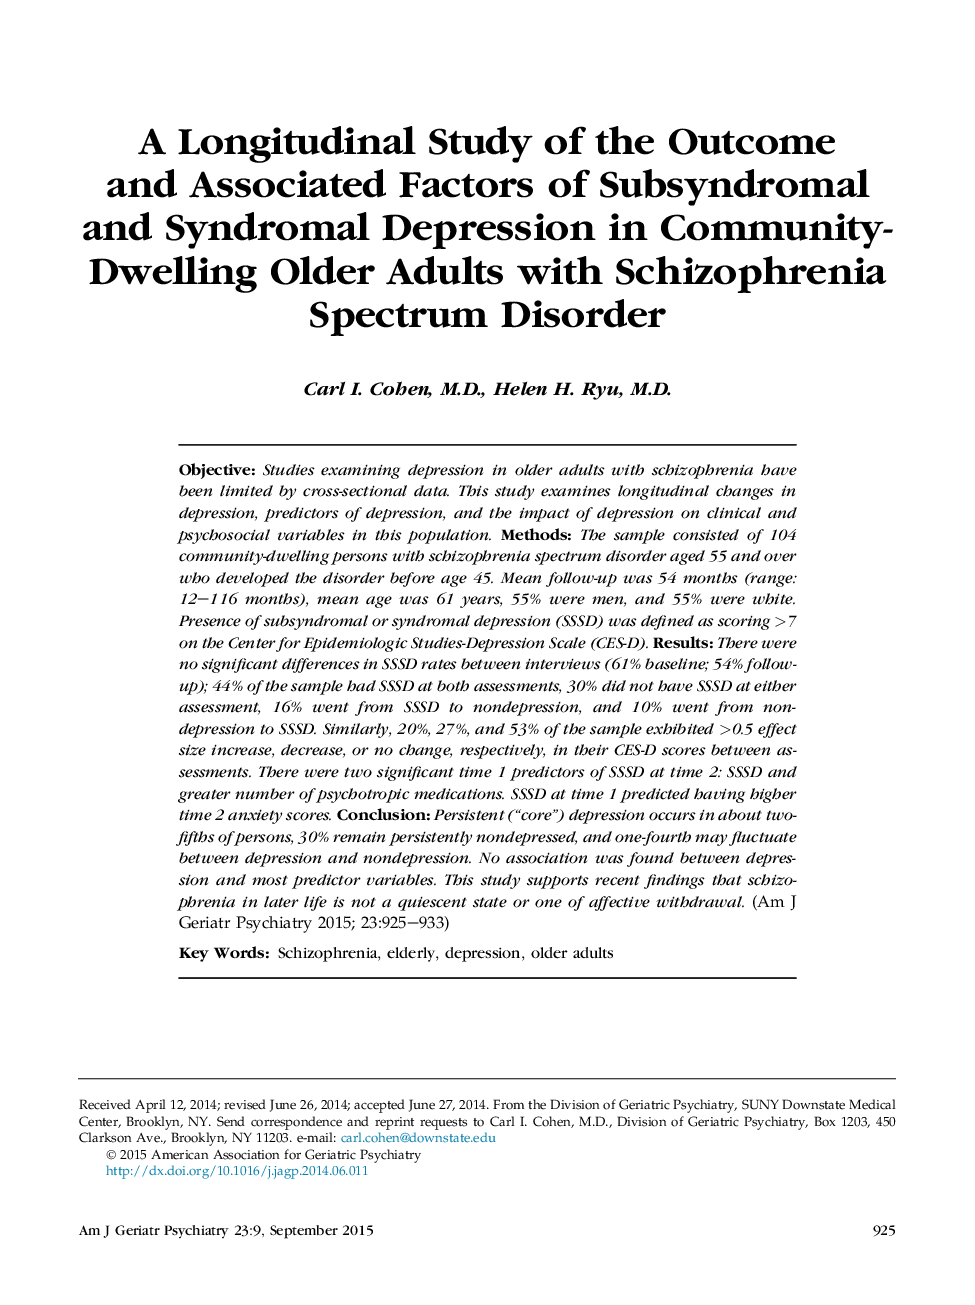 بررسی طولی نتایج و عوامل مرتبط با افسردگی سندرومول و سندرمال در بزرگسالان سالمند مبتلا به اختلال اسپیزوفرنی 